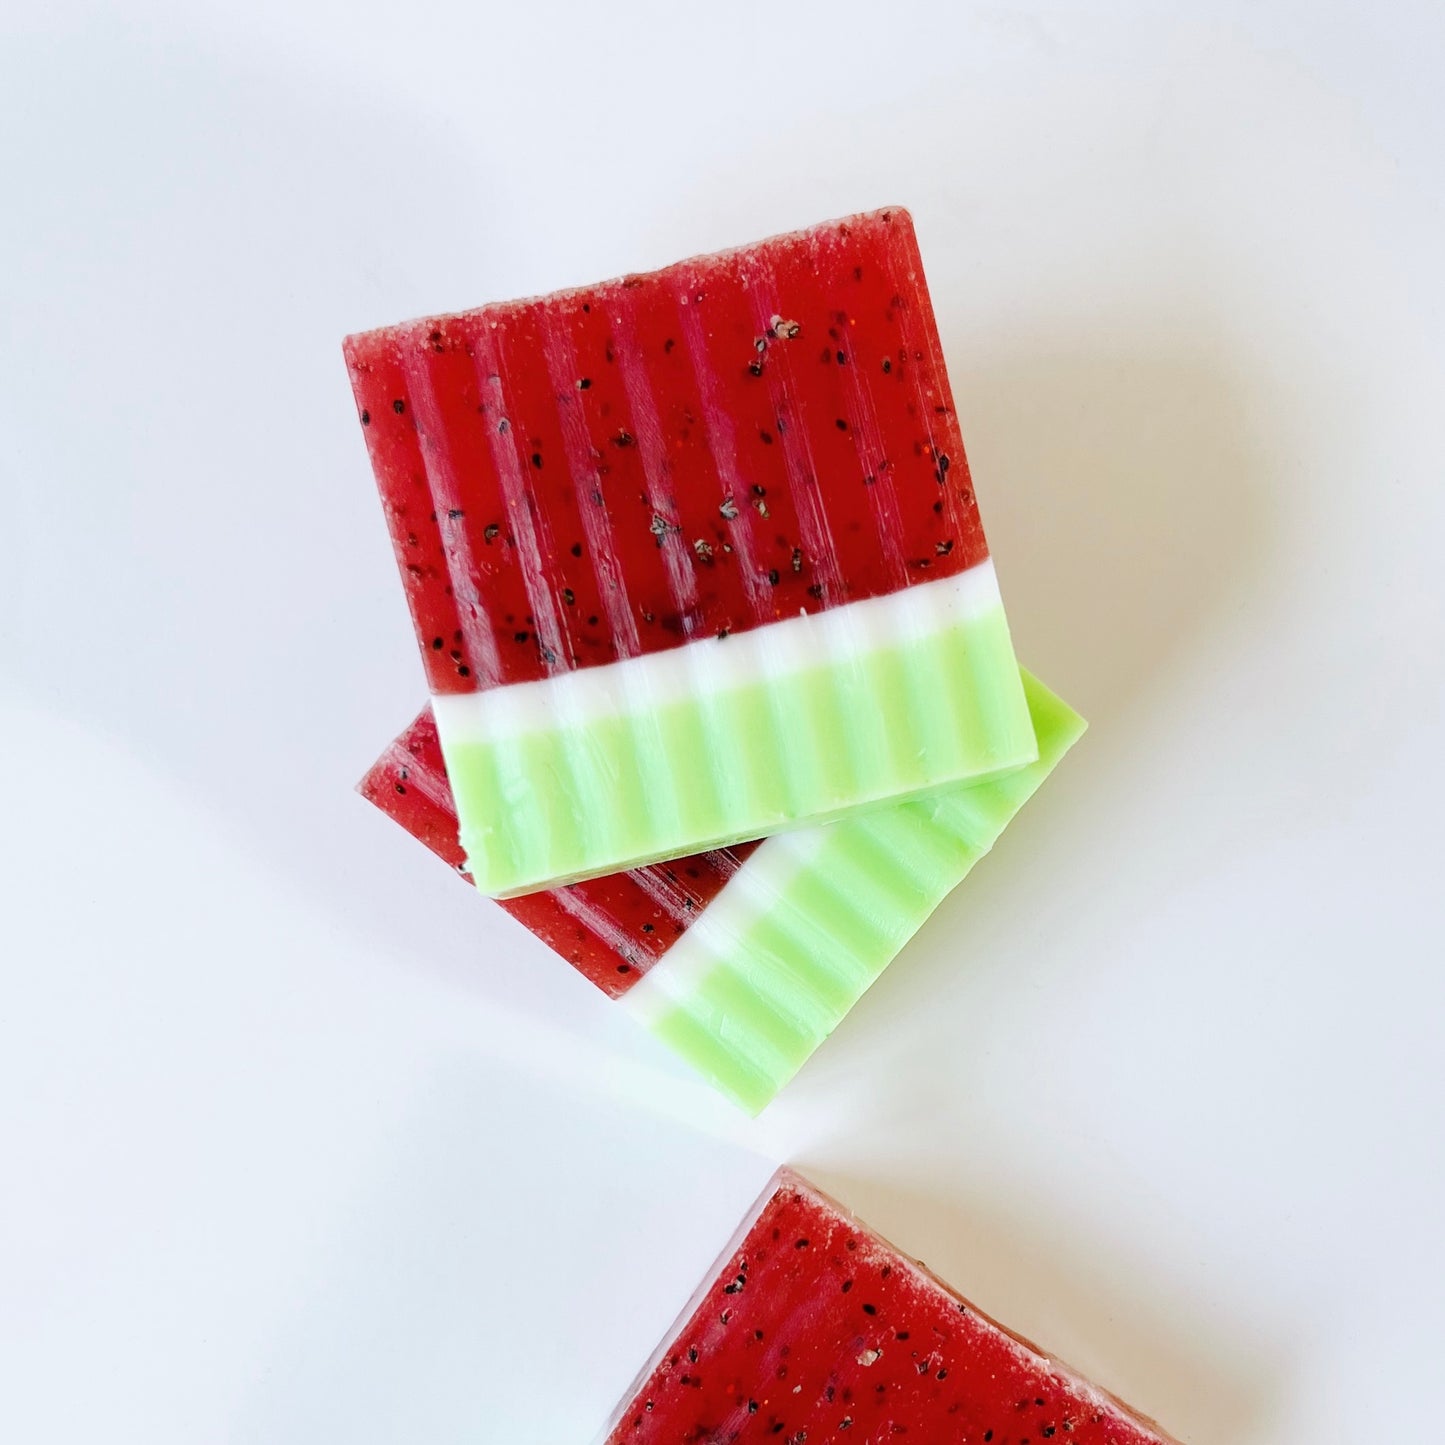 Watermelon Soap